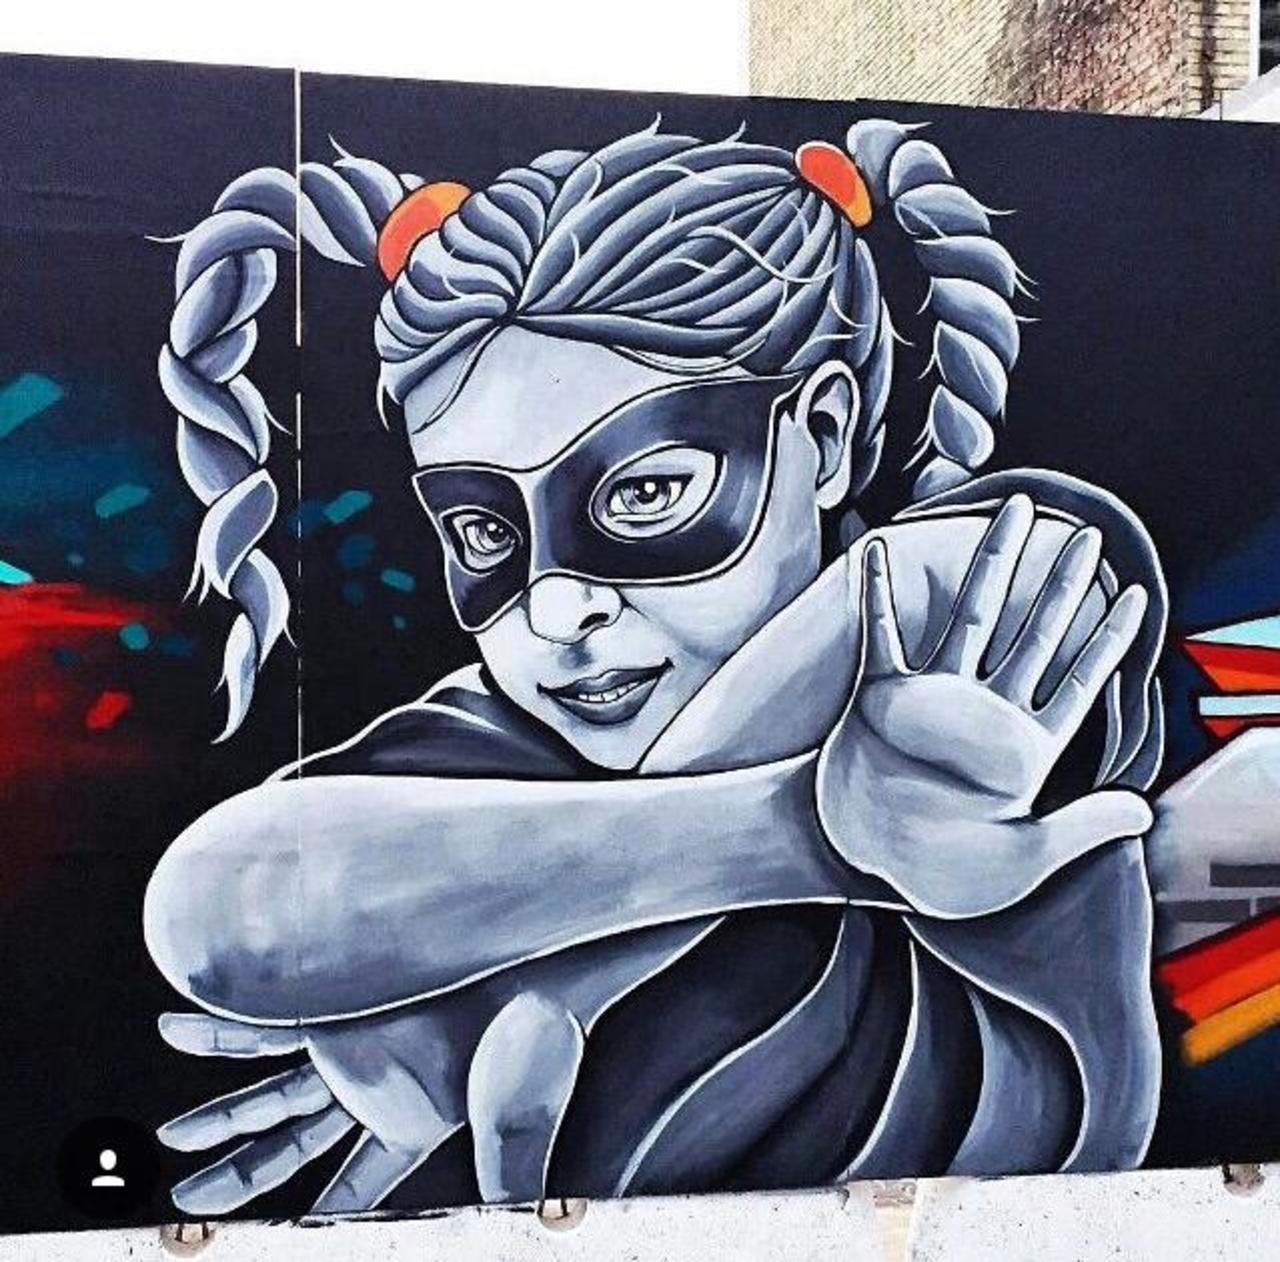 Street Art by Stinehvid 

#art #graffiti #mural #streetart http://t.co/2UE5wHwB7h